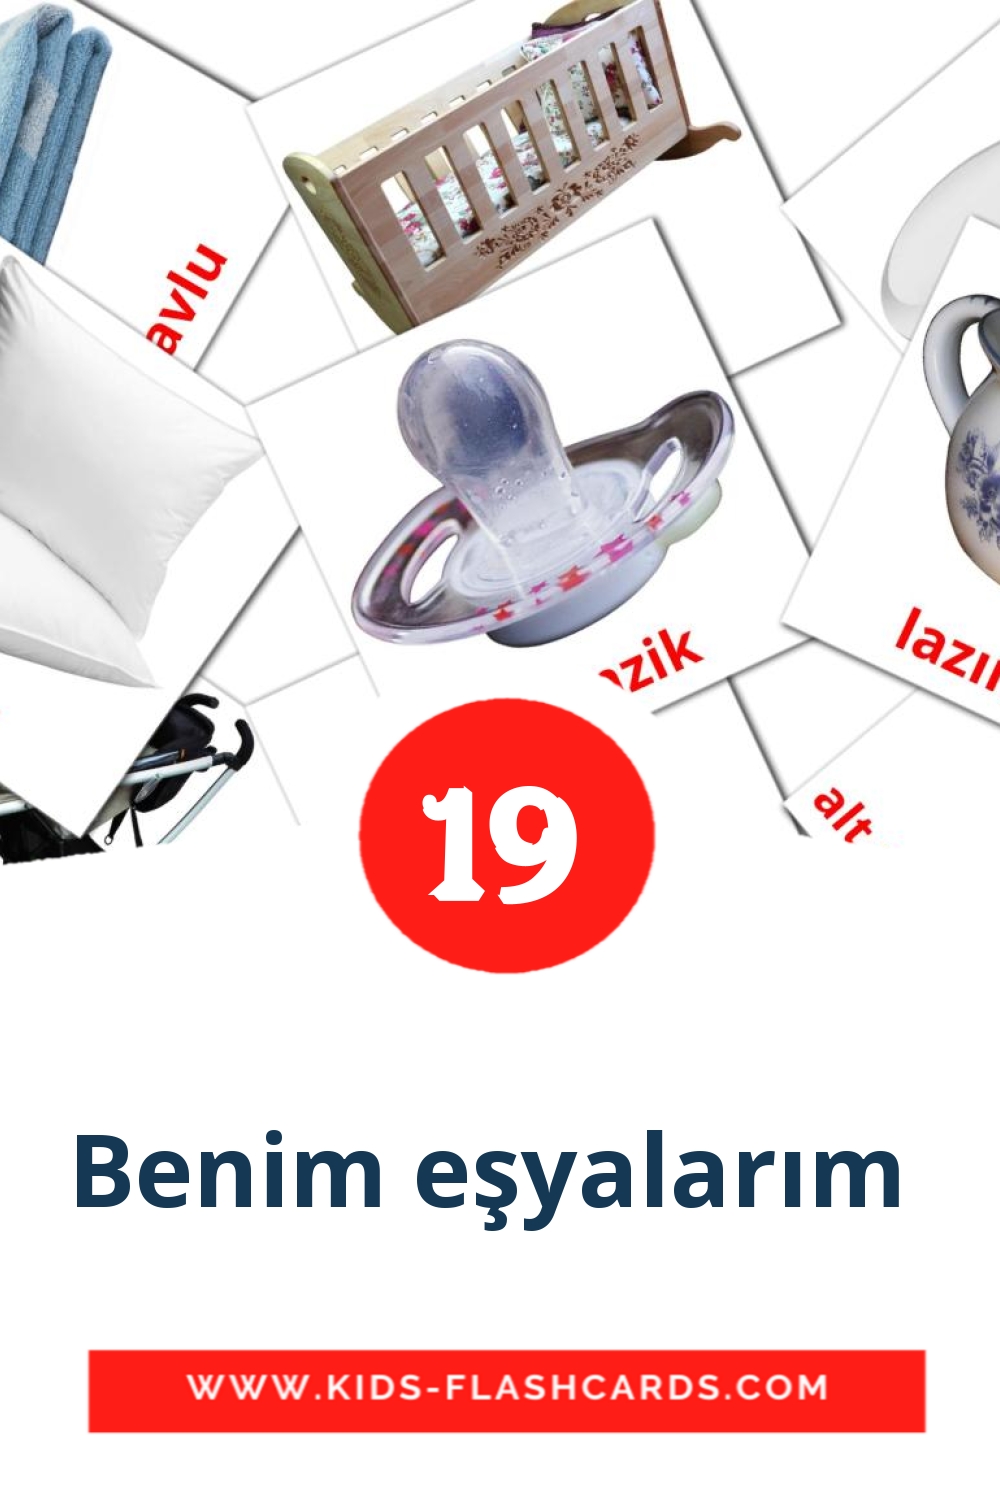 19 carte illustrate di Benim eşyalarım  per la scuola materna in turco